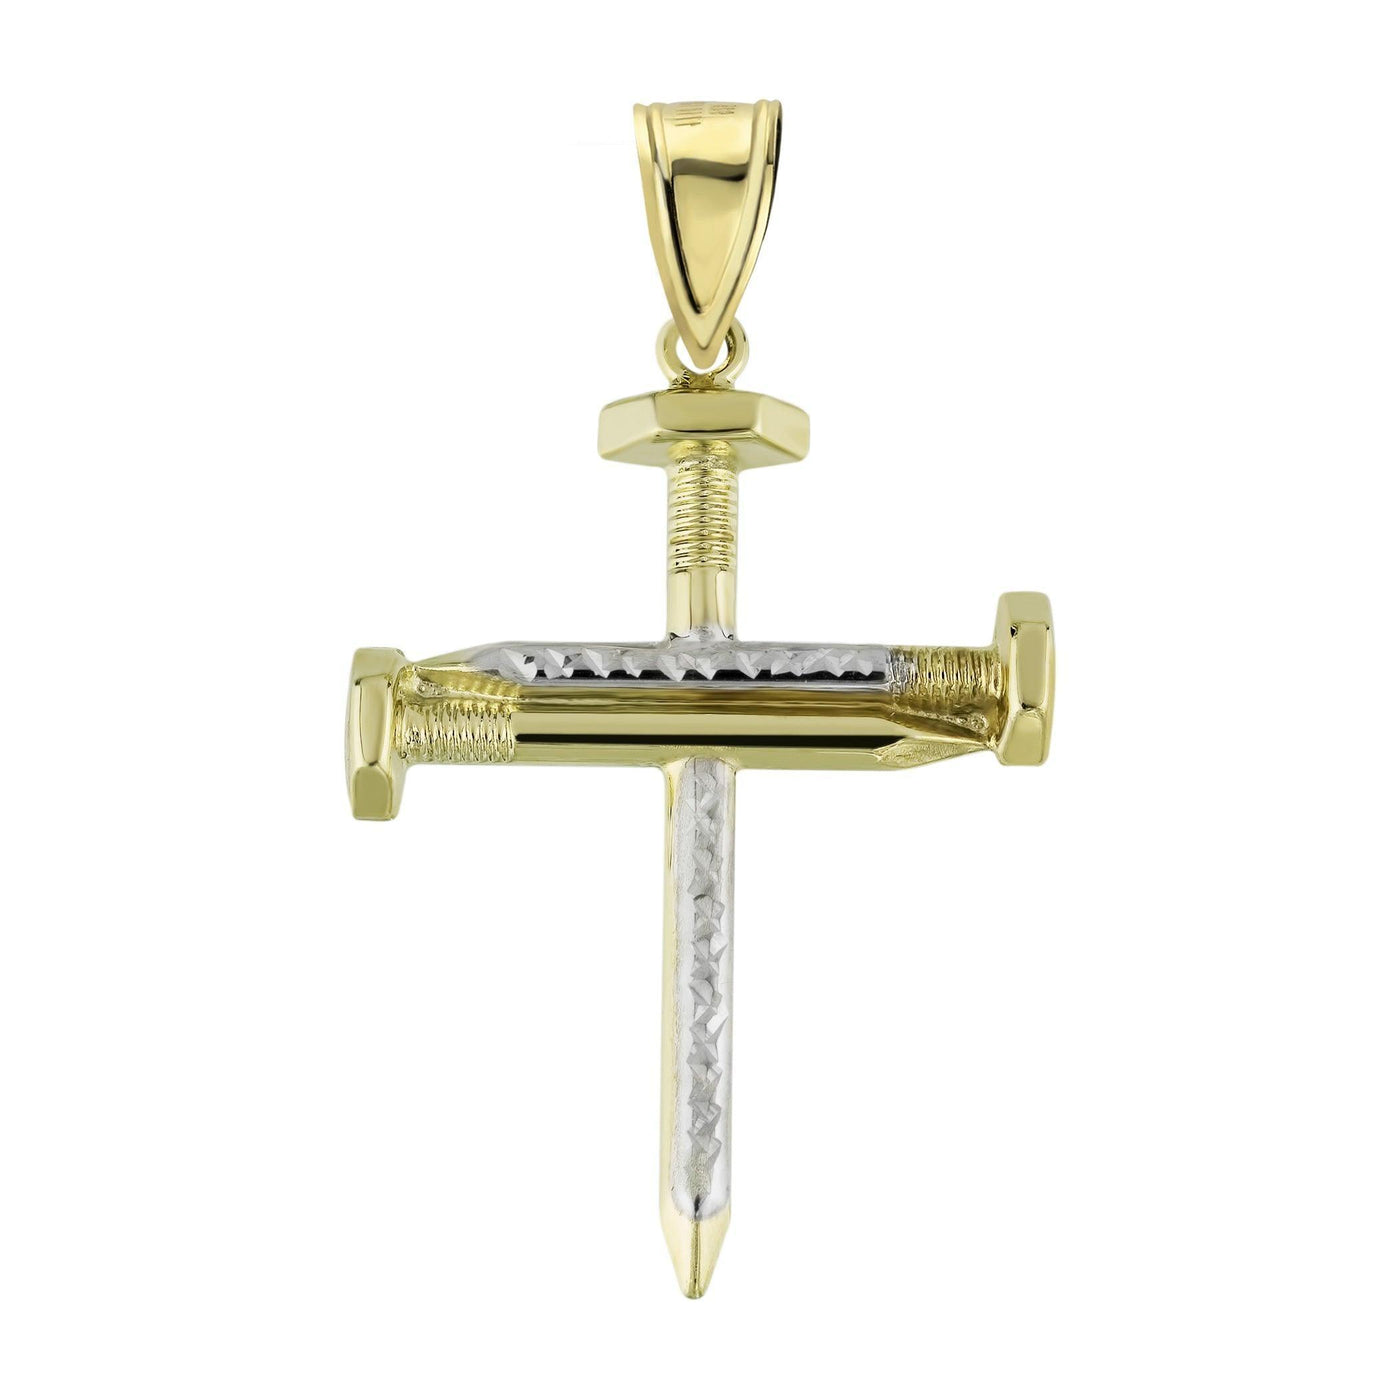 2.5" Screw Nail Cross Charm Pendant Diamond Cut 10K Yellow Gold - bayamjewelry